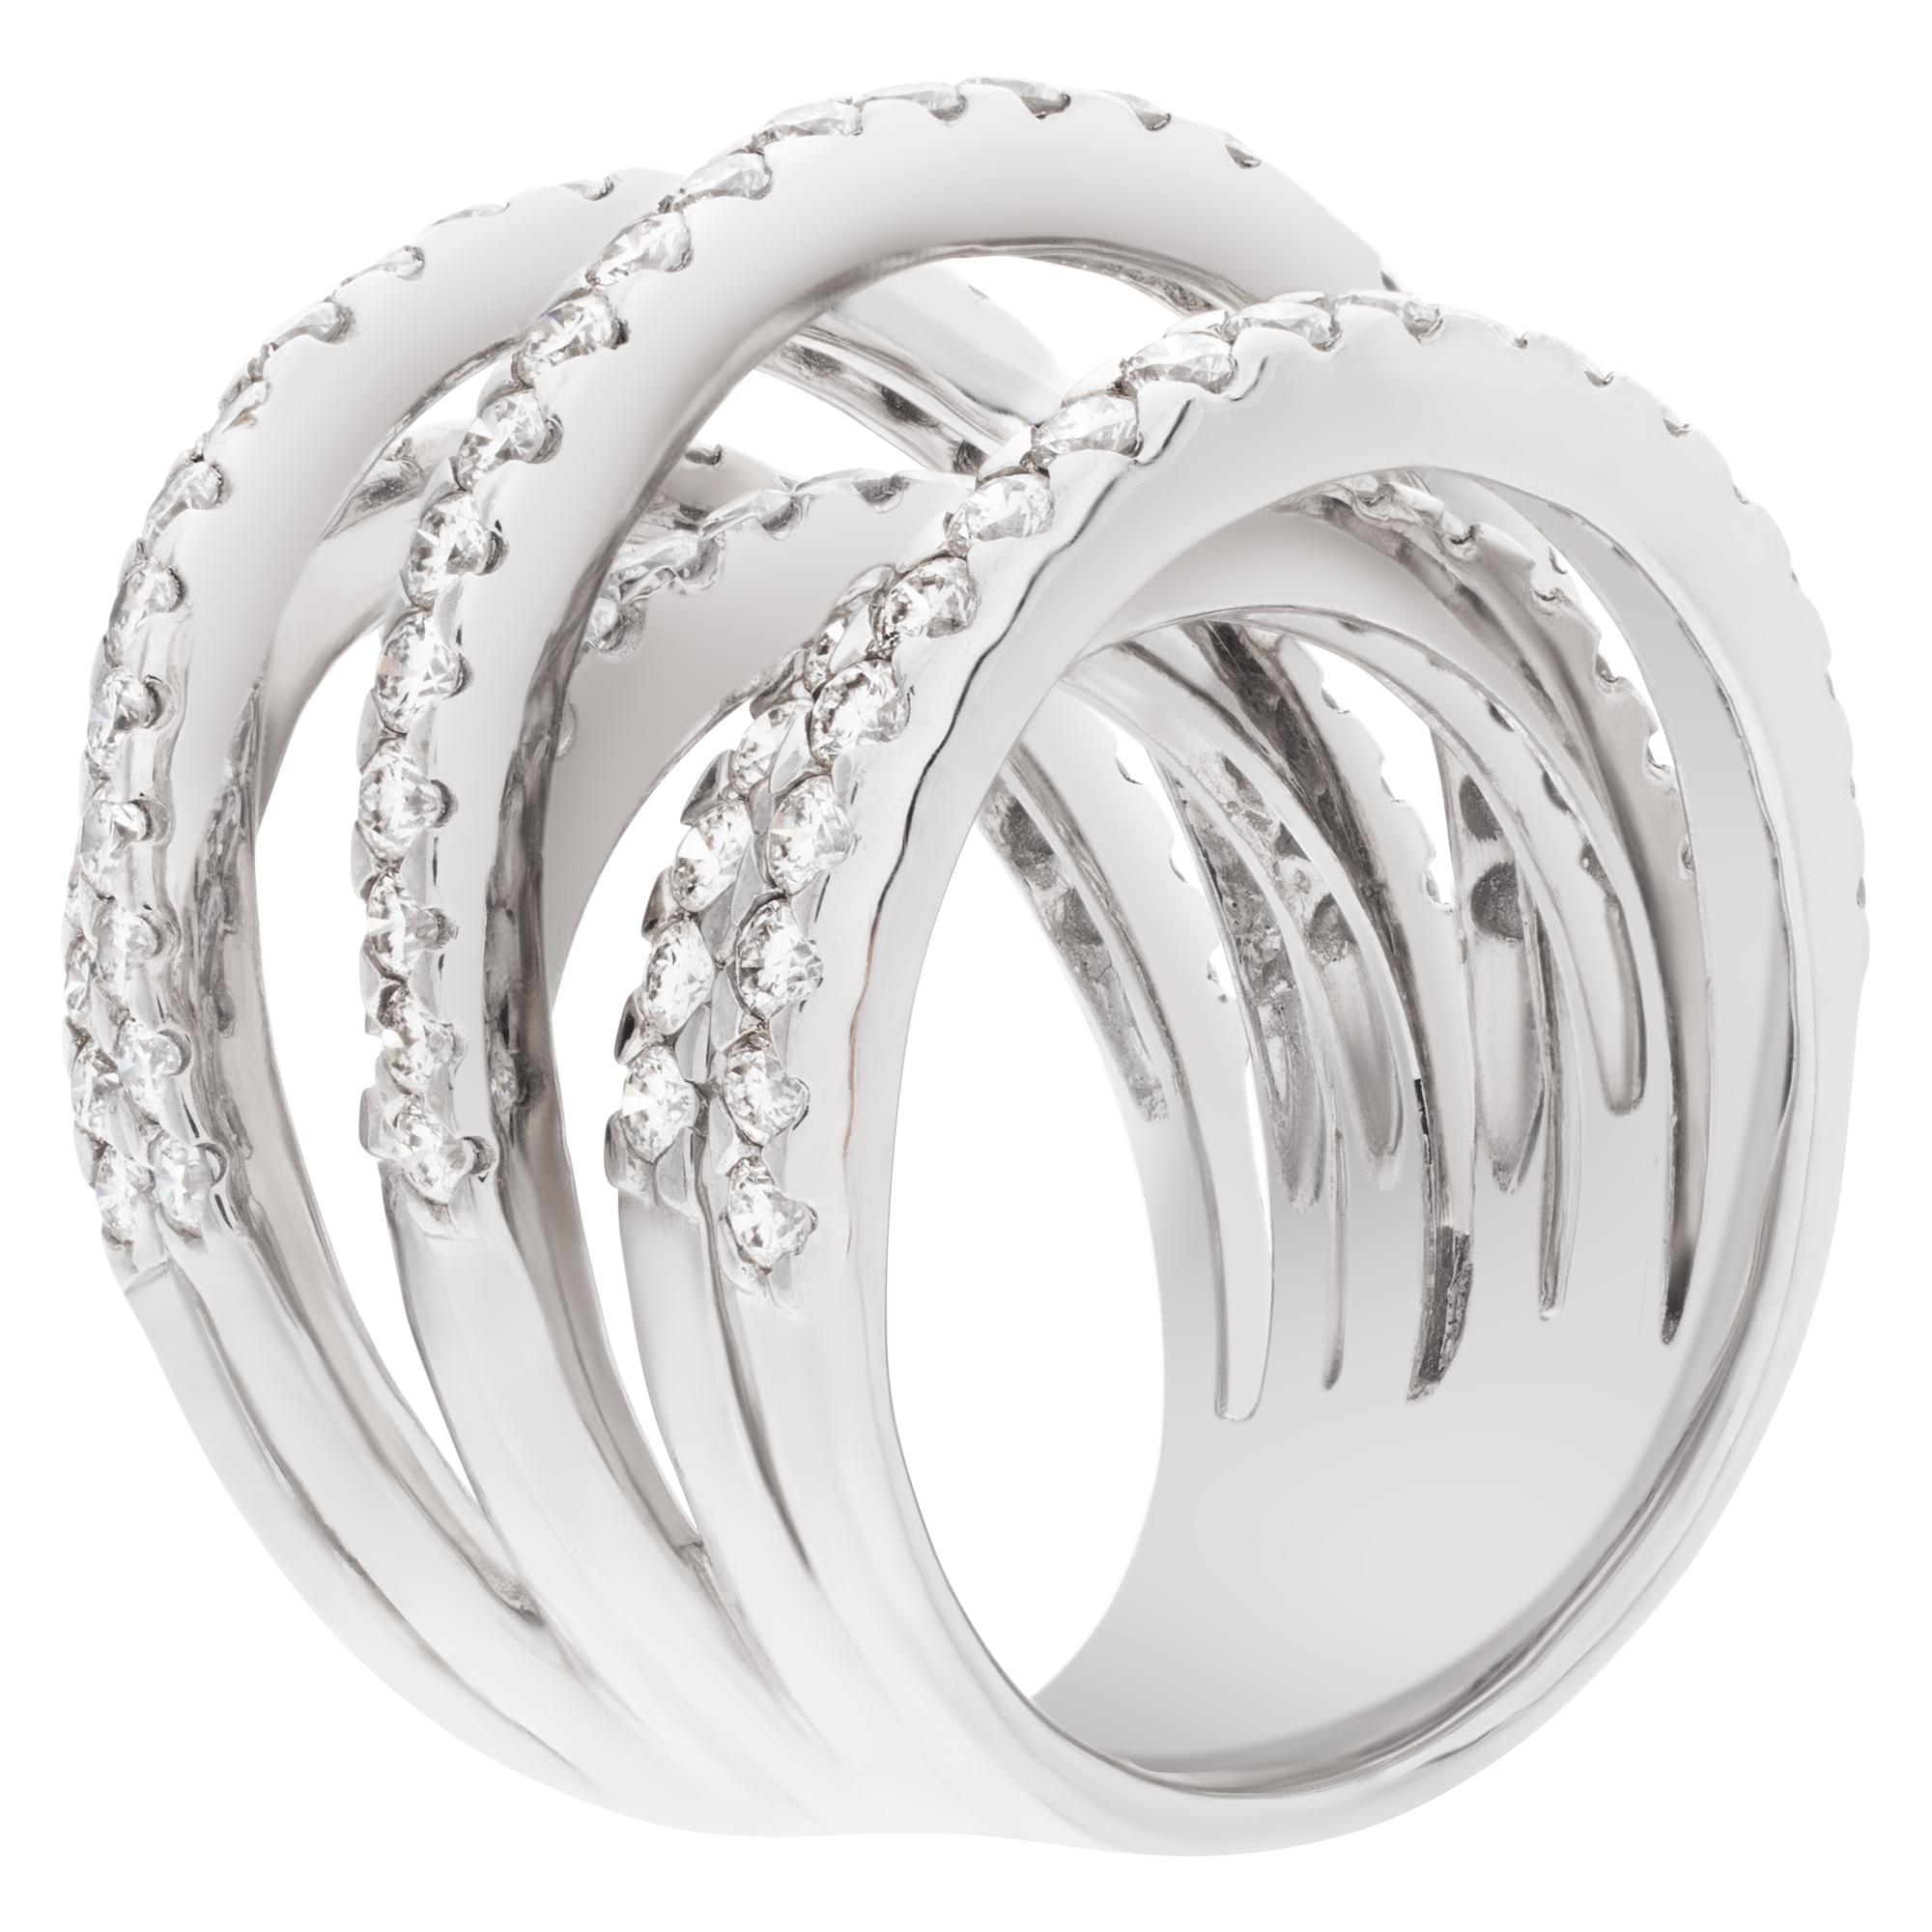 Women's Diamond Ring Set in 18k White Gold, 